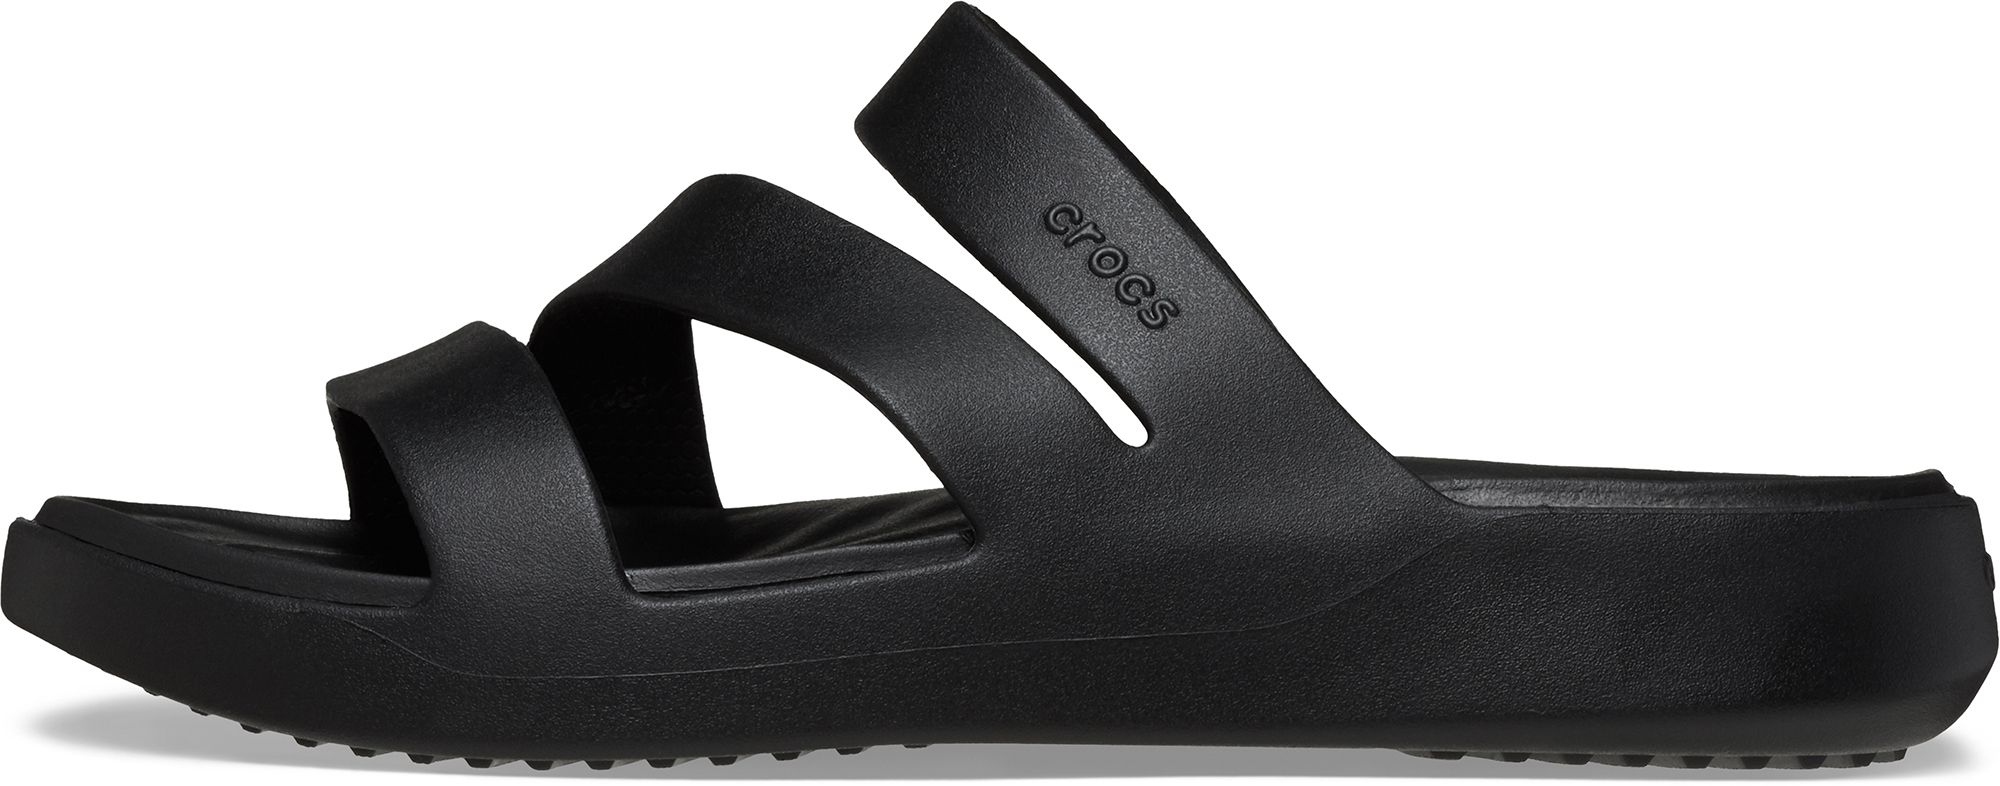 Crocs Women's Getaway Strappy Sandals